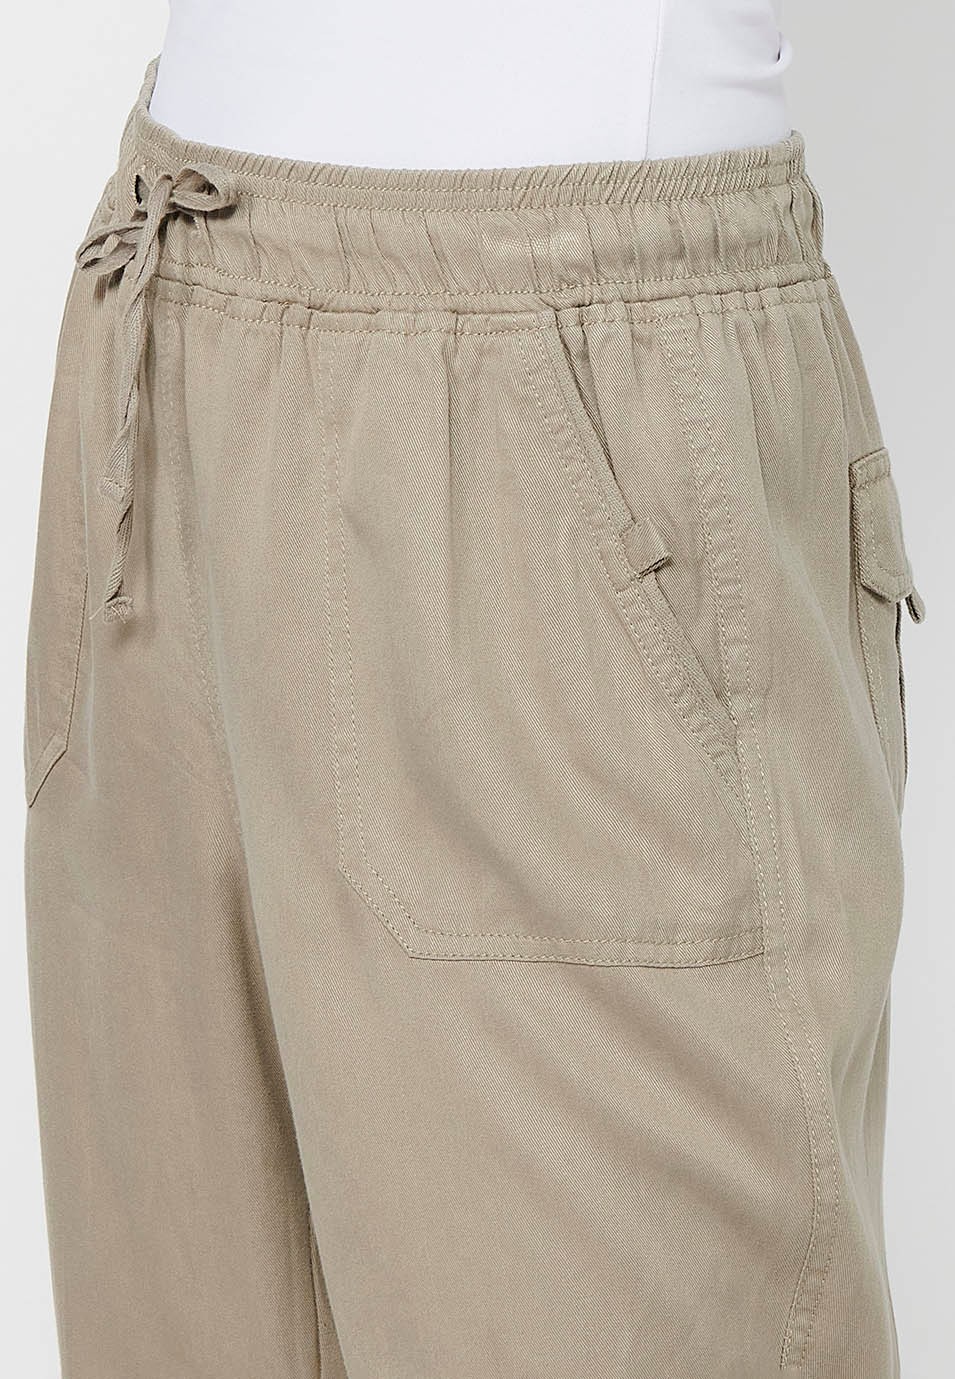 Pantalon de jogging long finition bouclée et taille caoutchoutée avec quatre poches, deux poches arrière à rabat en Gris pour Femme 6